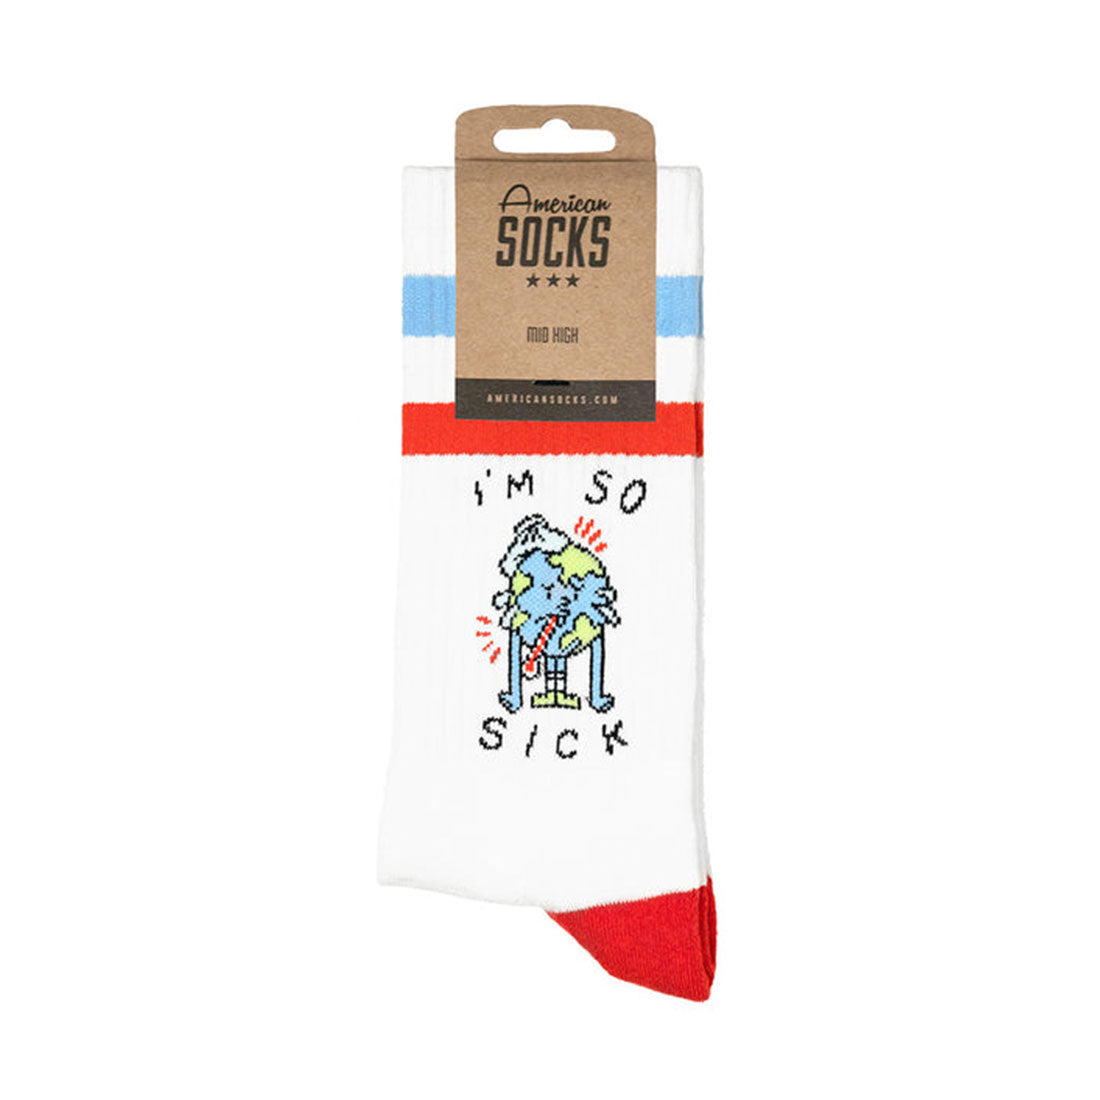 American Socks Design - I'm So Sick Apparel Socks